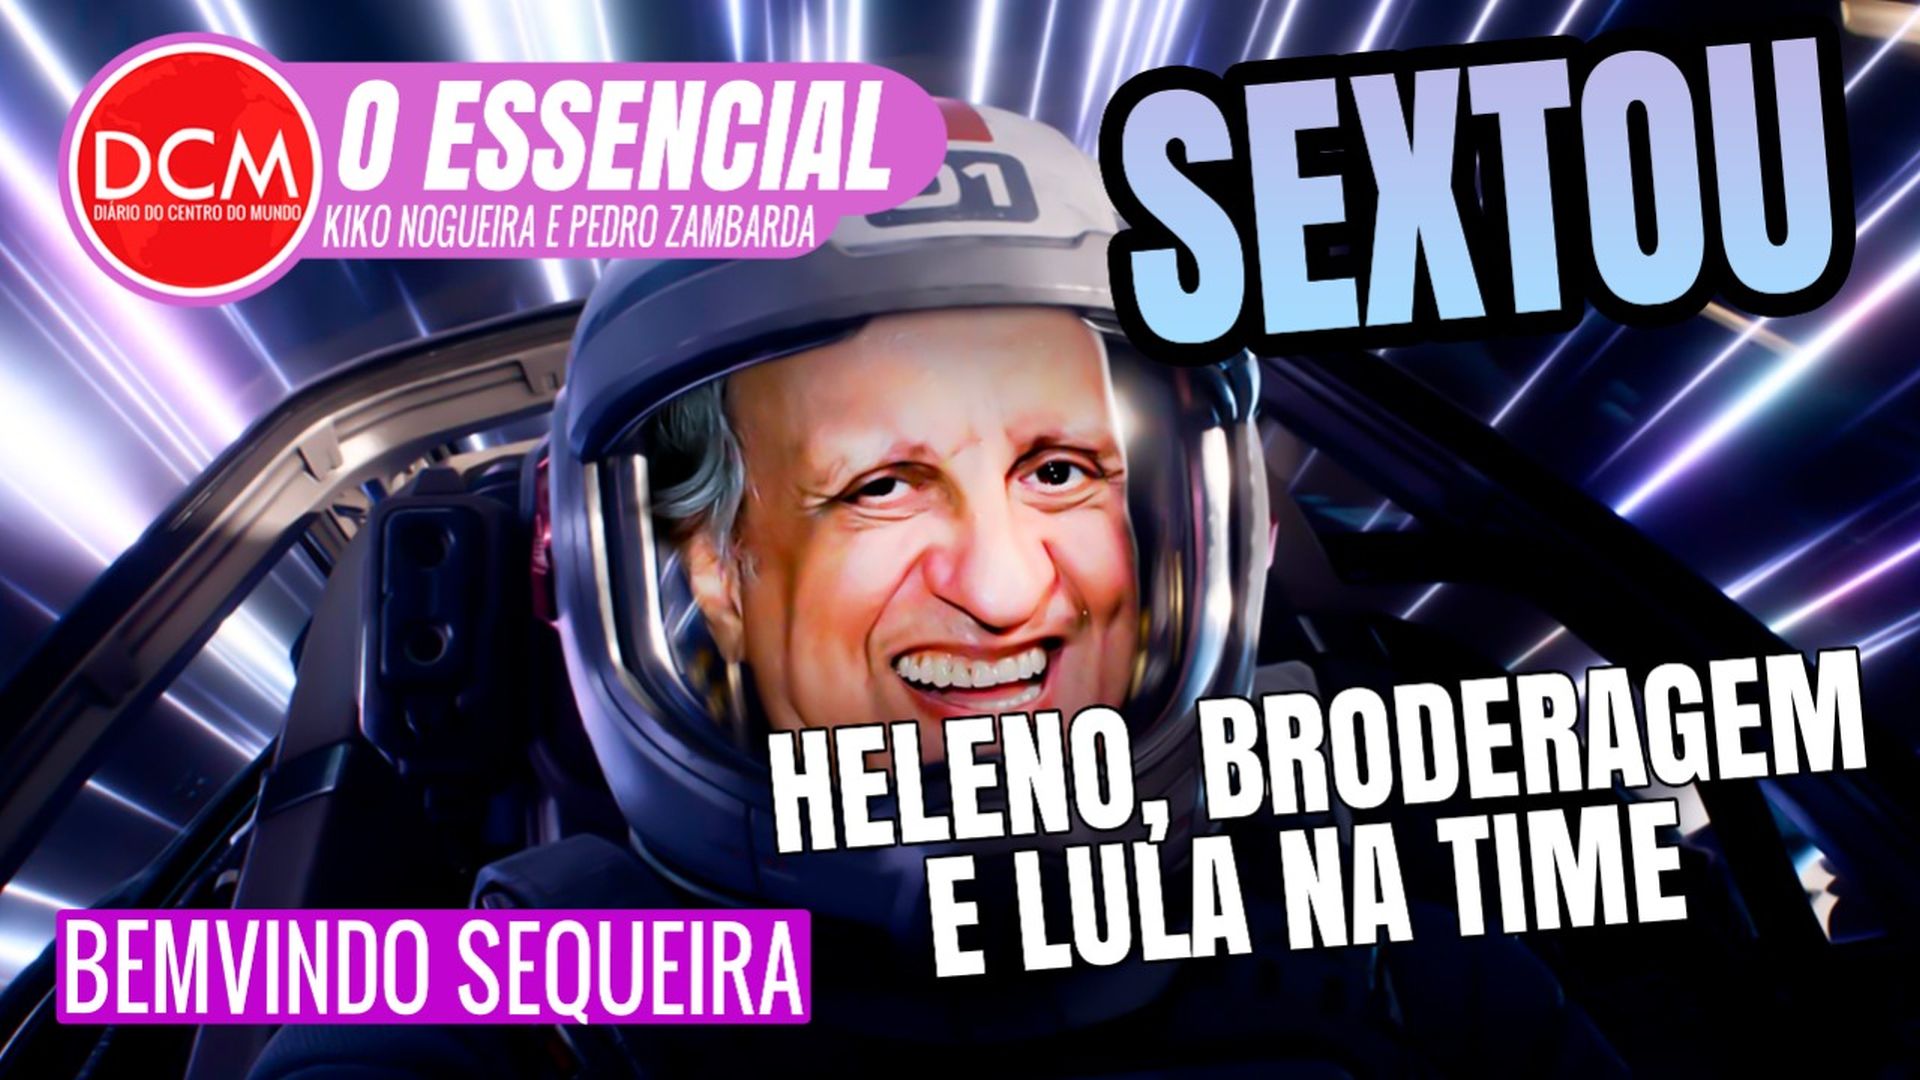 Essencial do DCM: SEXTOU com Bemvindo Sequeira